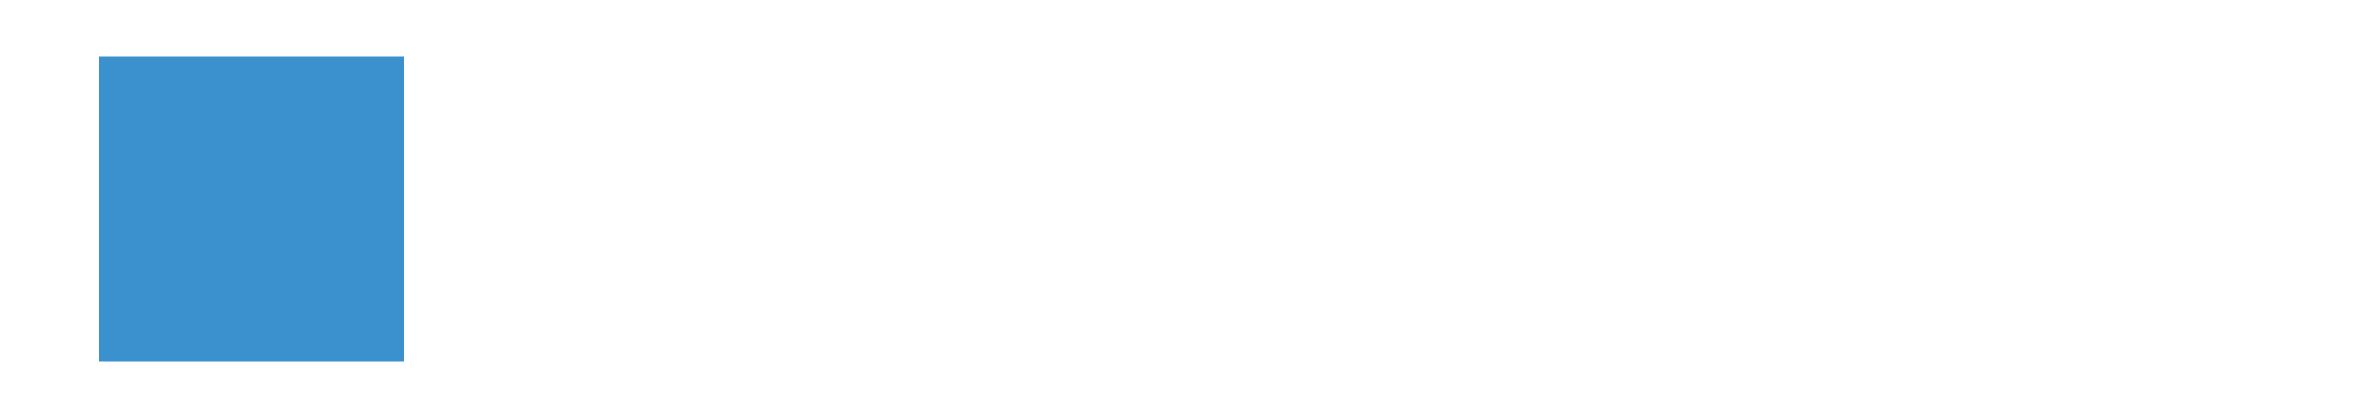 Steuerberatung Caldewey-Friebe Logo